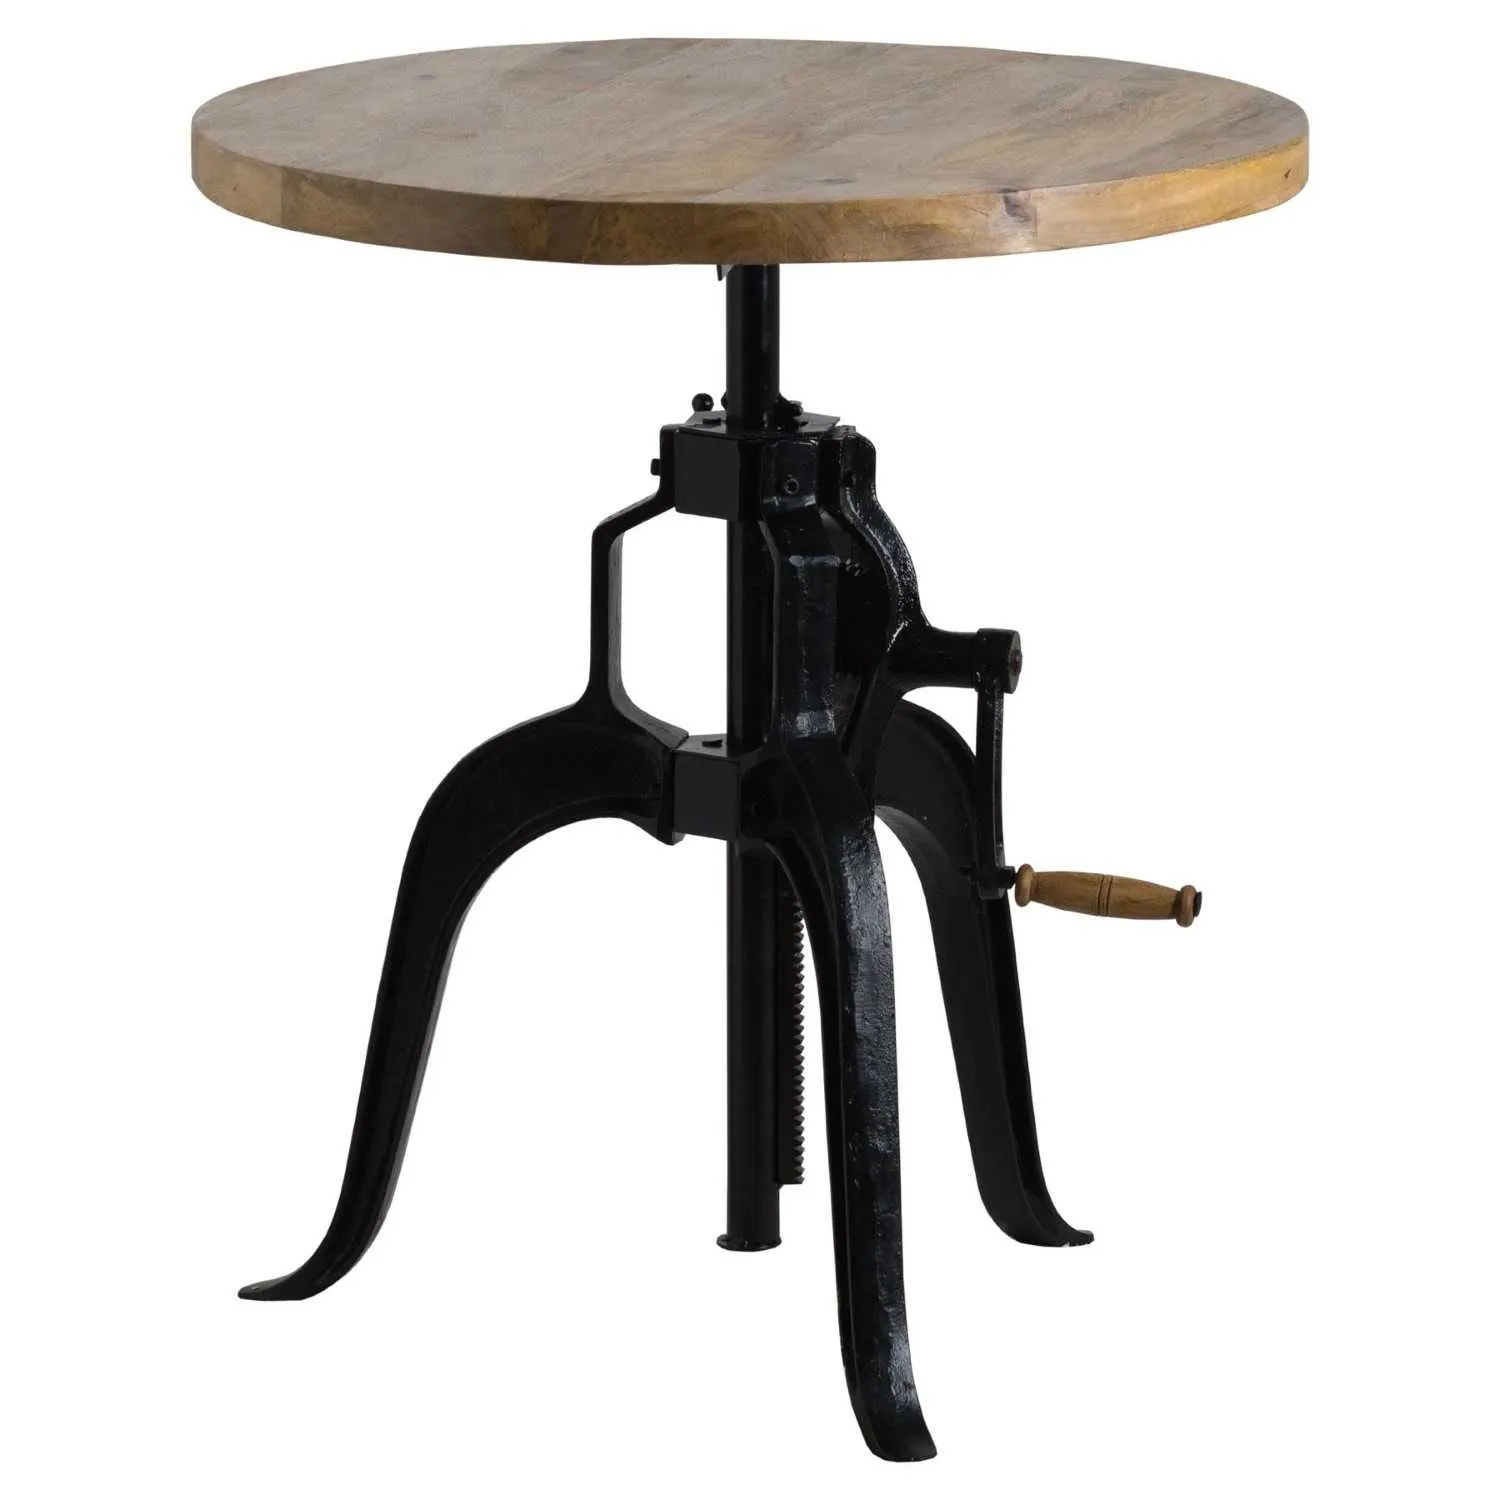 Industrial Rustic Height Adjustable Crank Bar Bistro Table Wooden Top